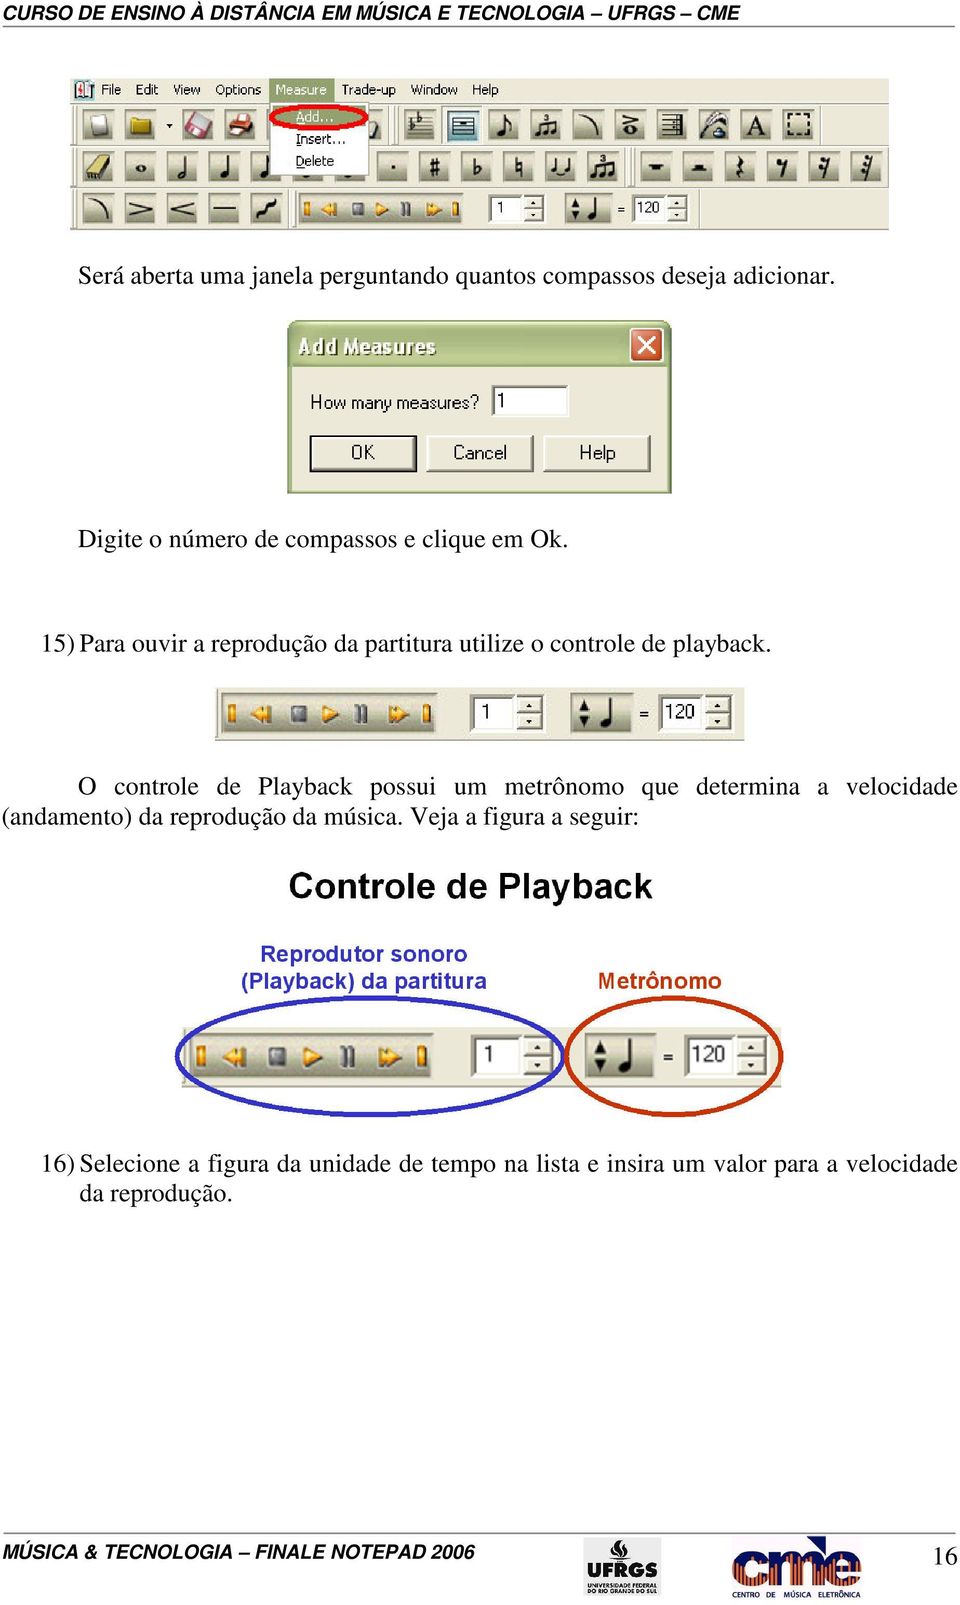 O controle de Playback possui um metrônomo que determina a velocidade (andamento) da reprodução da música.